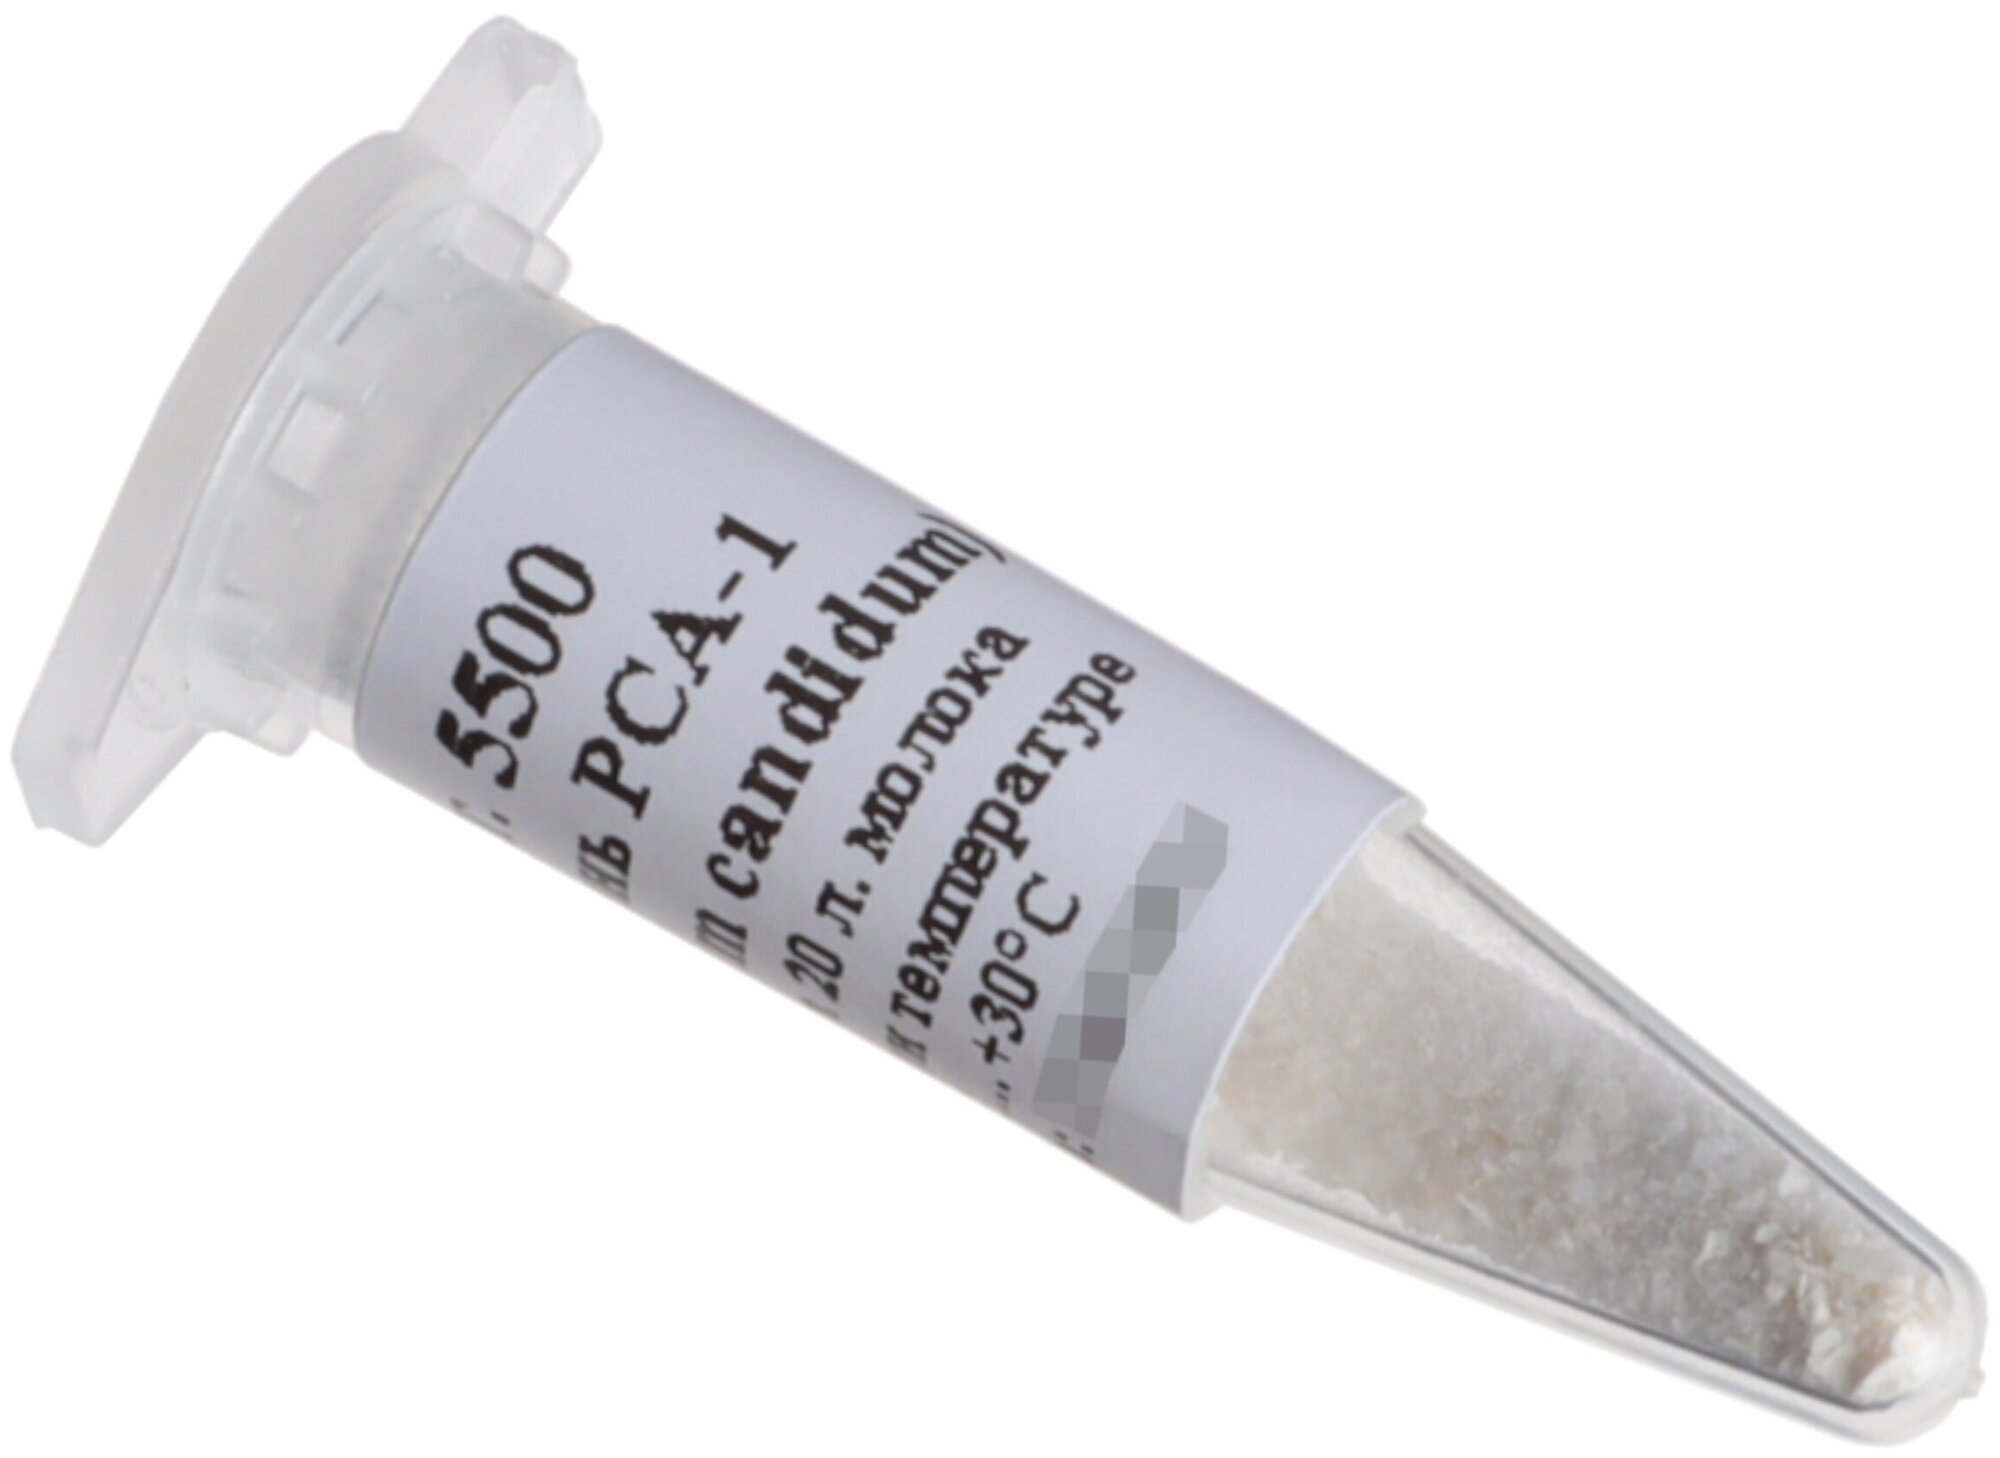 Культура плесени для сыров Penicillium candidum PCA-1 флакон на 20 литров молока (Здоровеево)